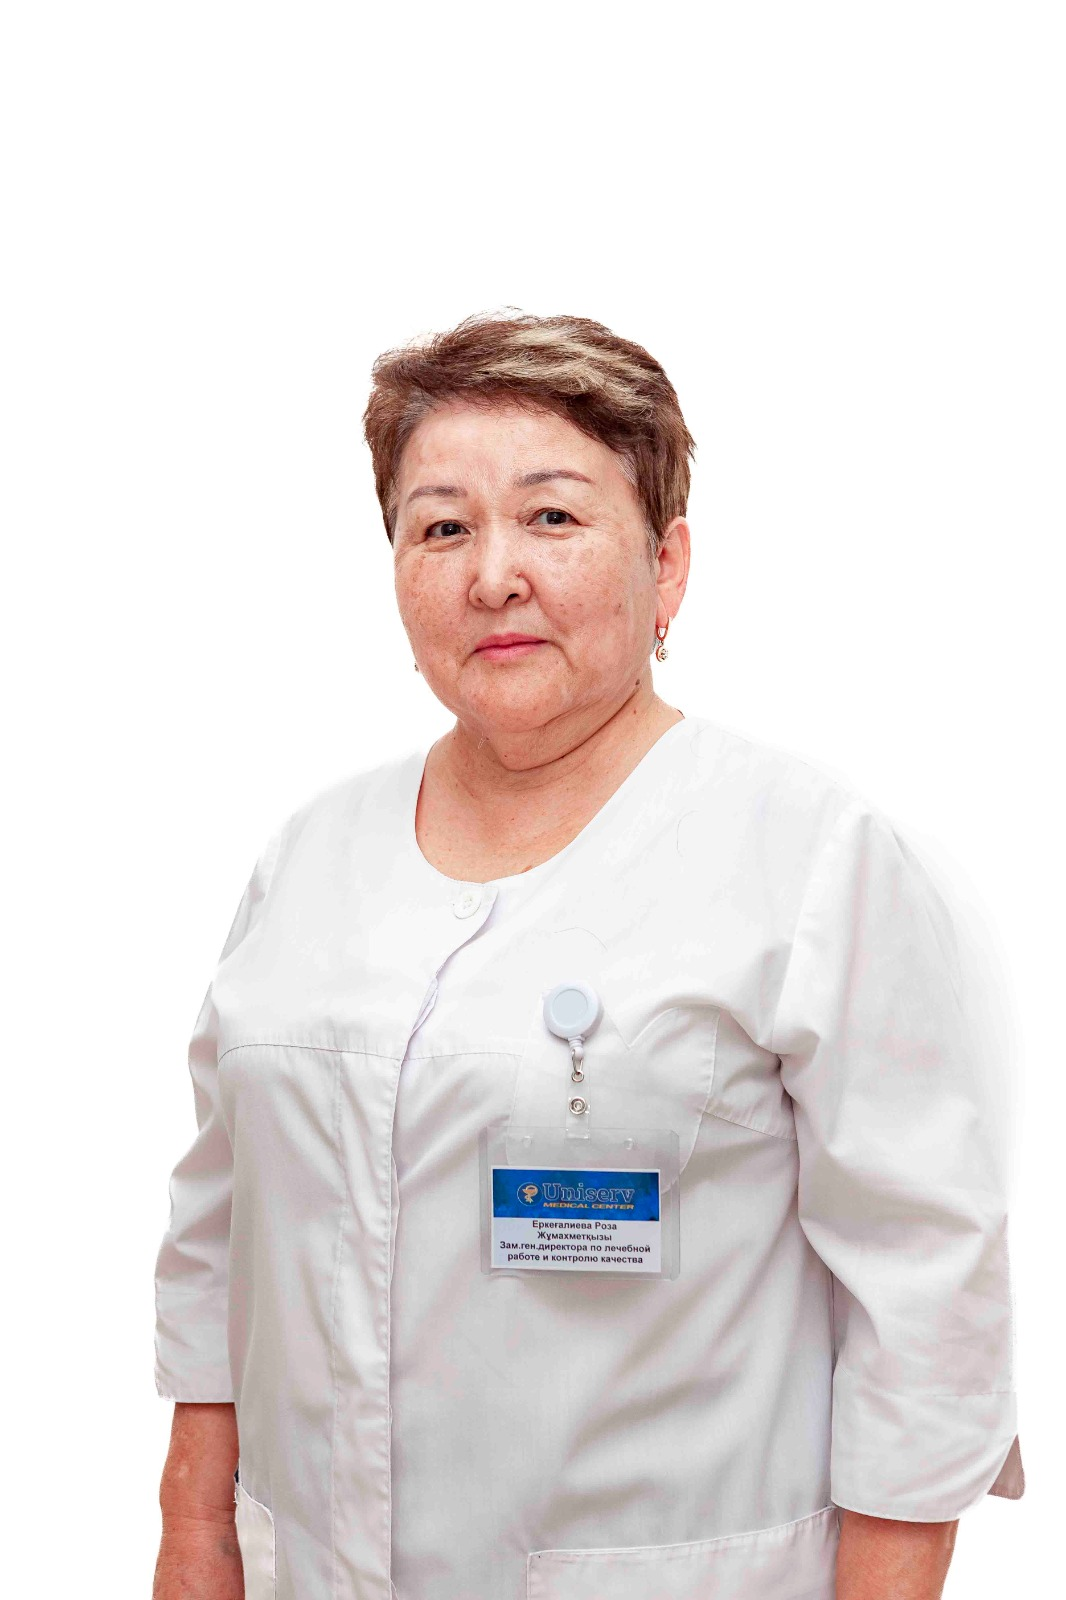 Нургалиева Самал Махамбетовна – Исполняющая обязанности заместителя генерального директора по лечебной работе и контролю качества